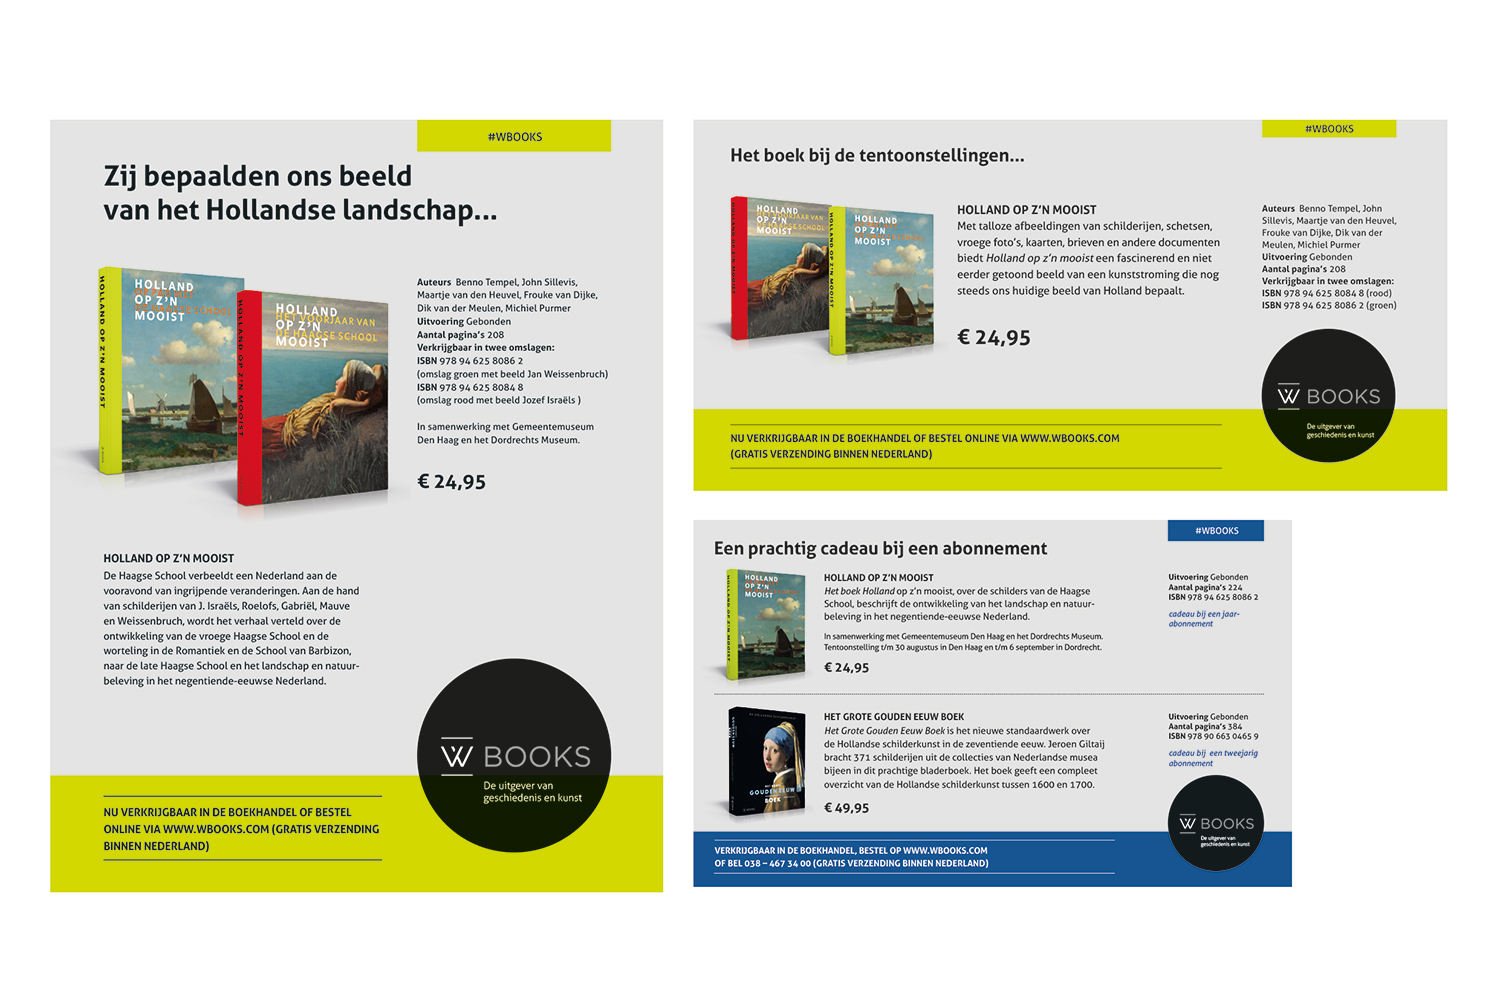 Schaap Versnellen Verwarren Advertentie serie Uitgeverij Wbooks - Angelique Fokker